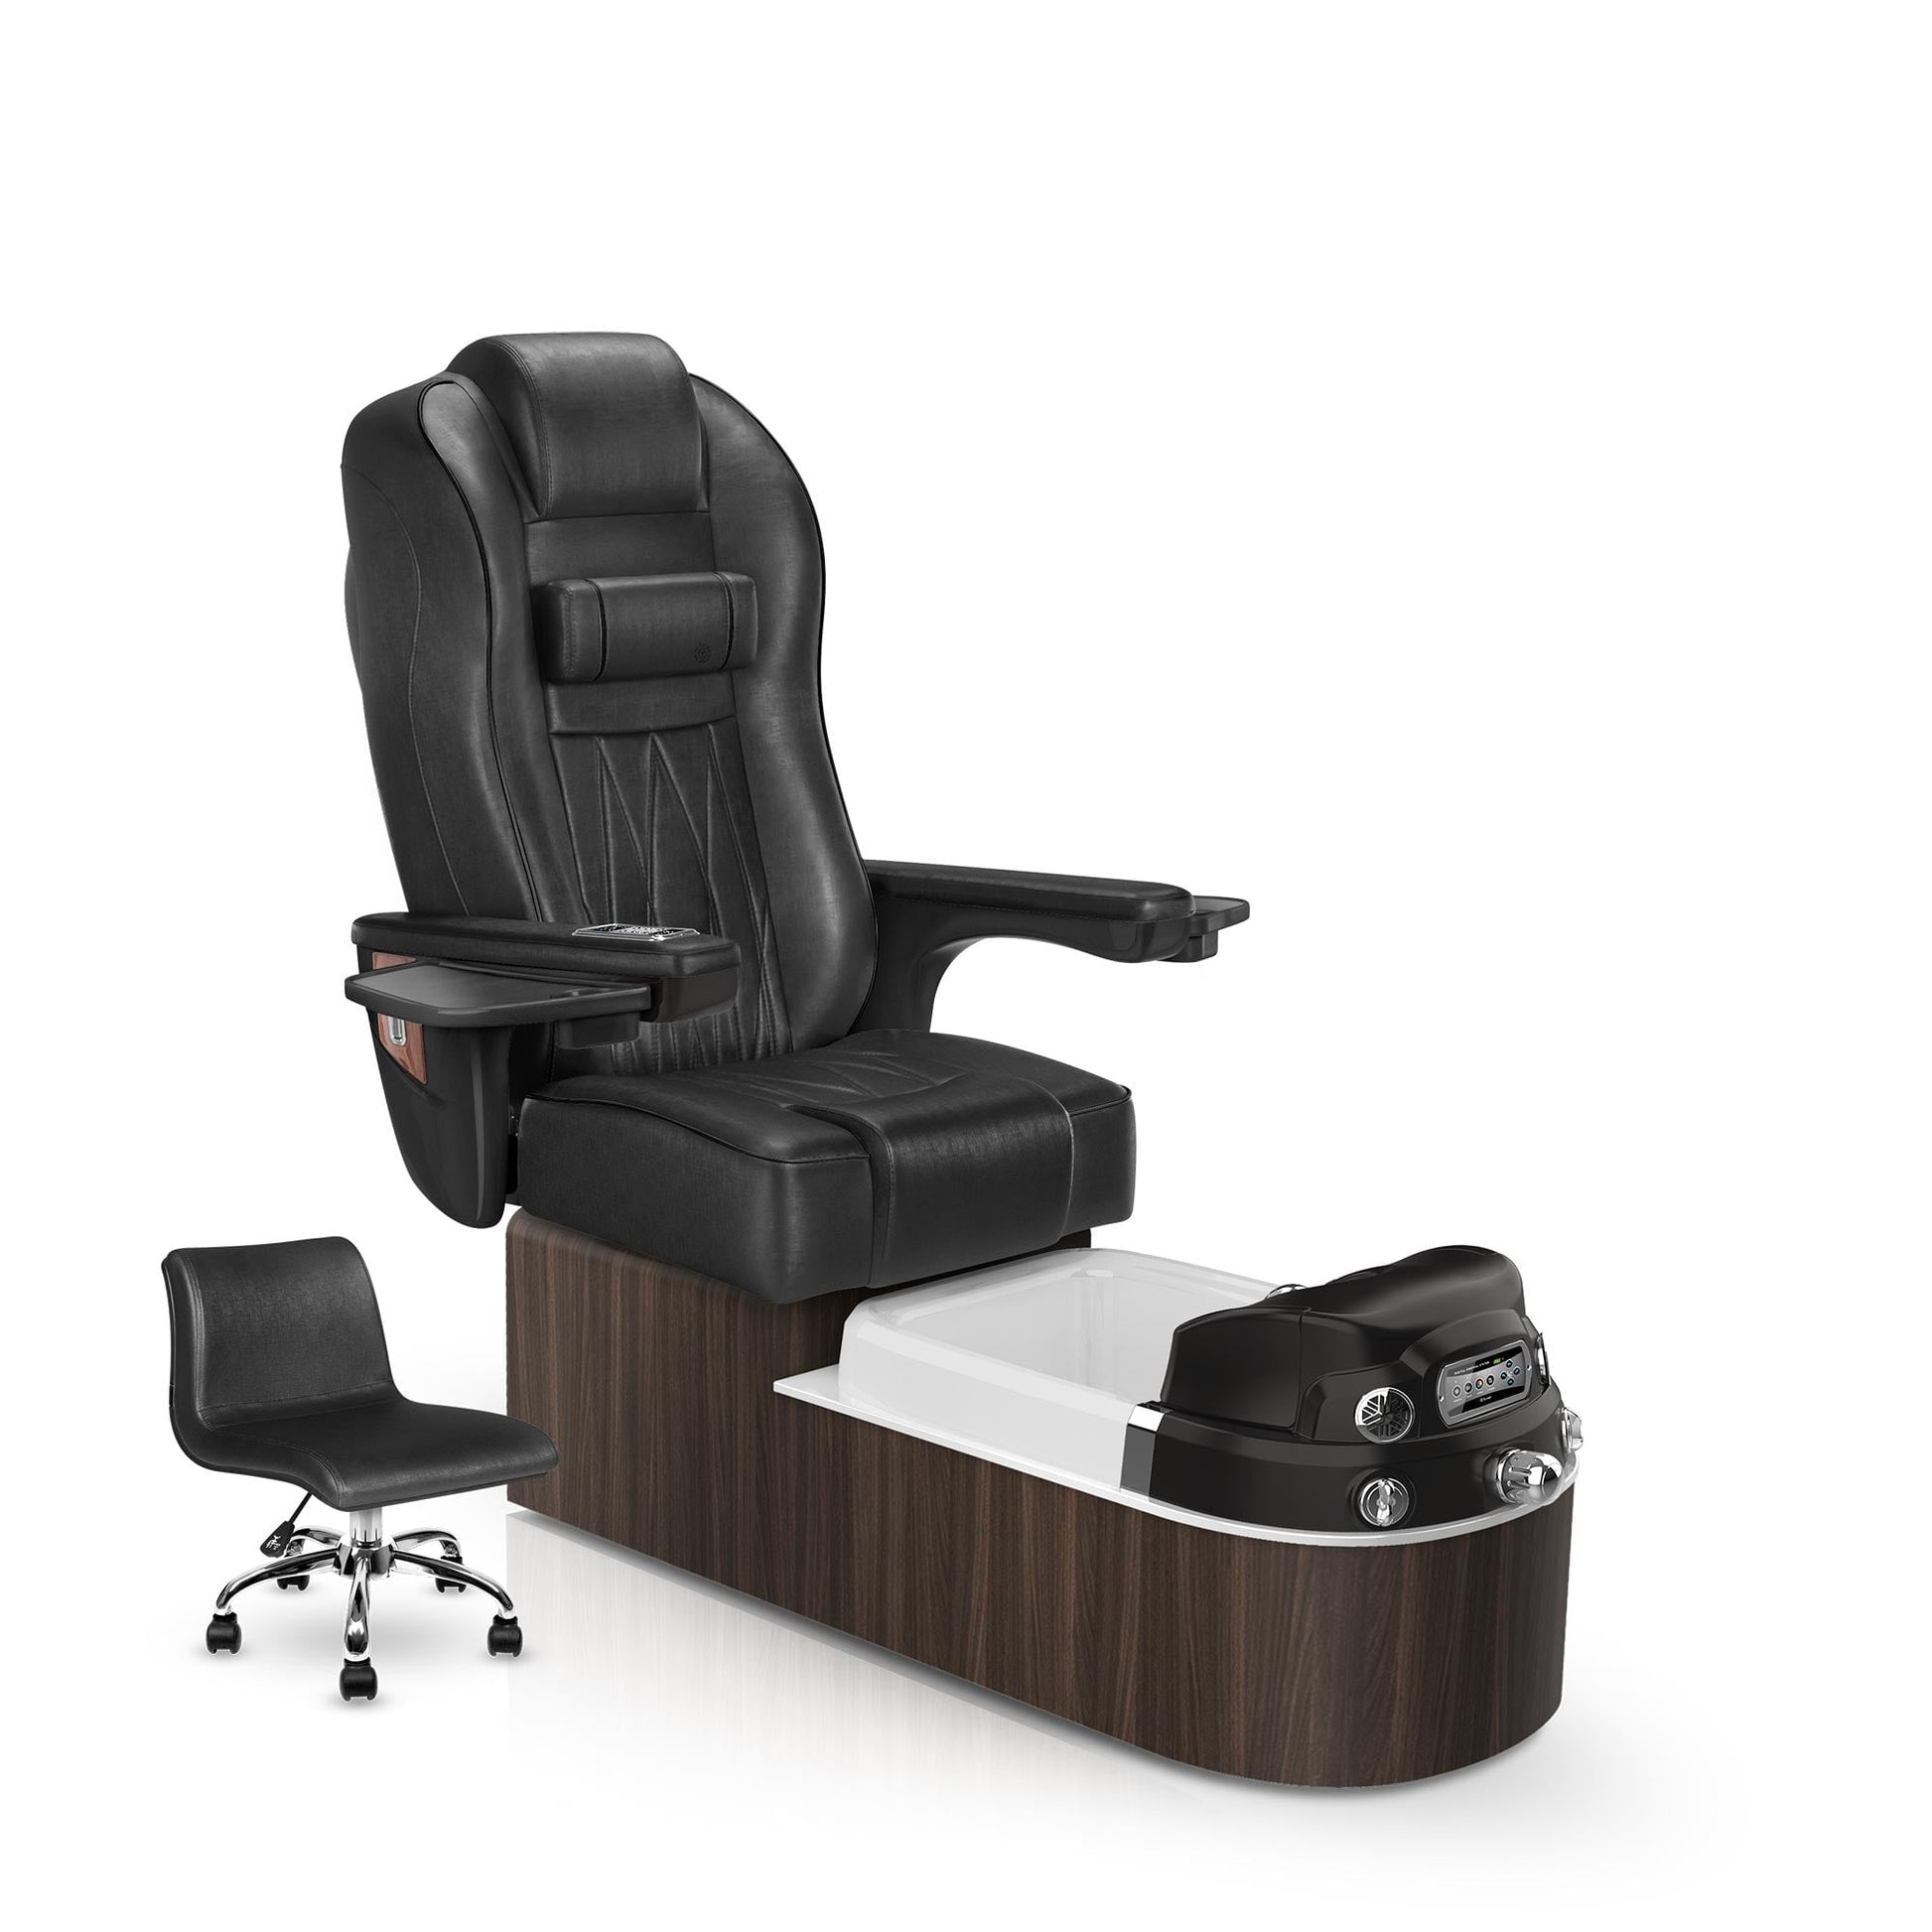 Lexor Envision pedicure chair noir cushion and dark walnut base